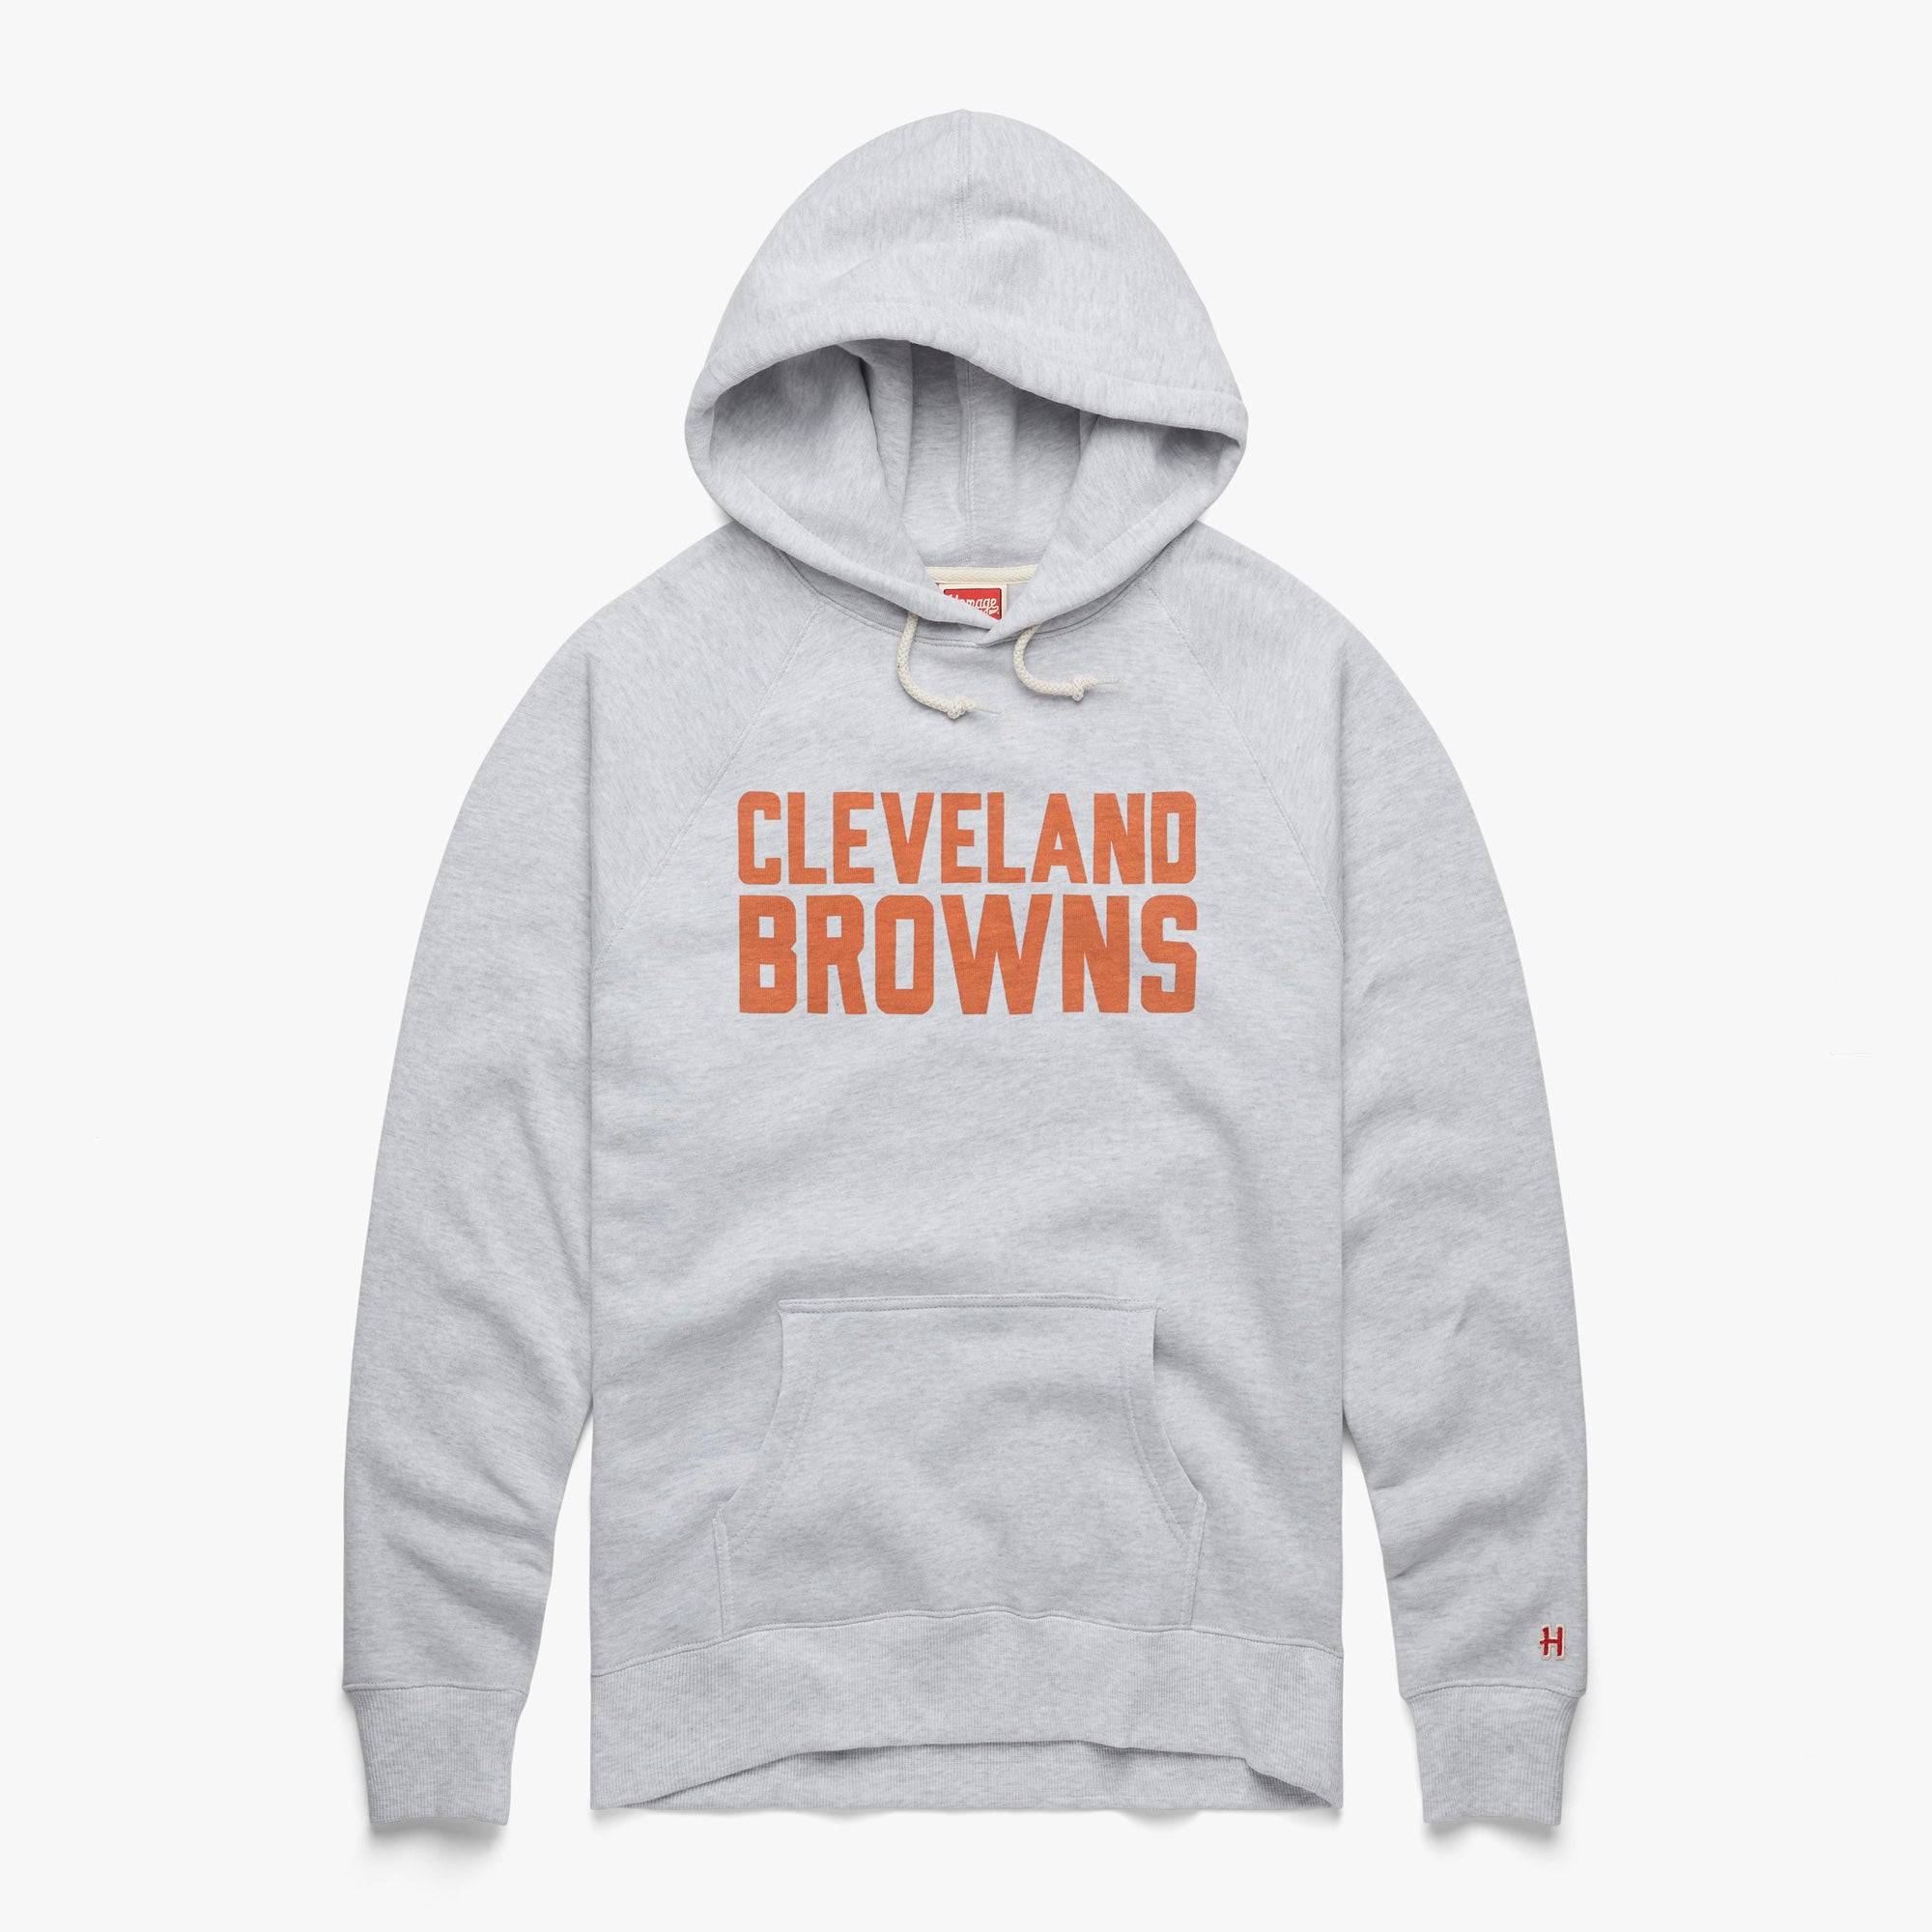 Ladies Cleveland Browns Hoodie, Browns Sweatshirts, Browns Fleece